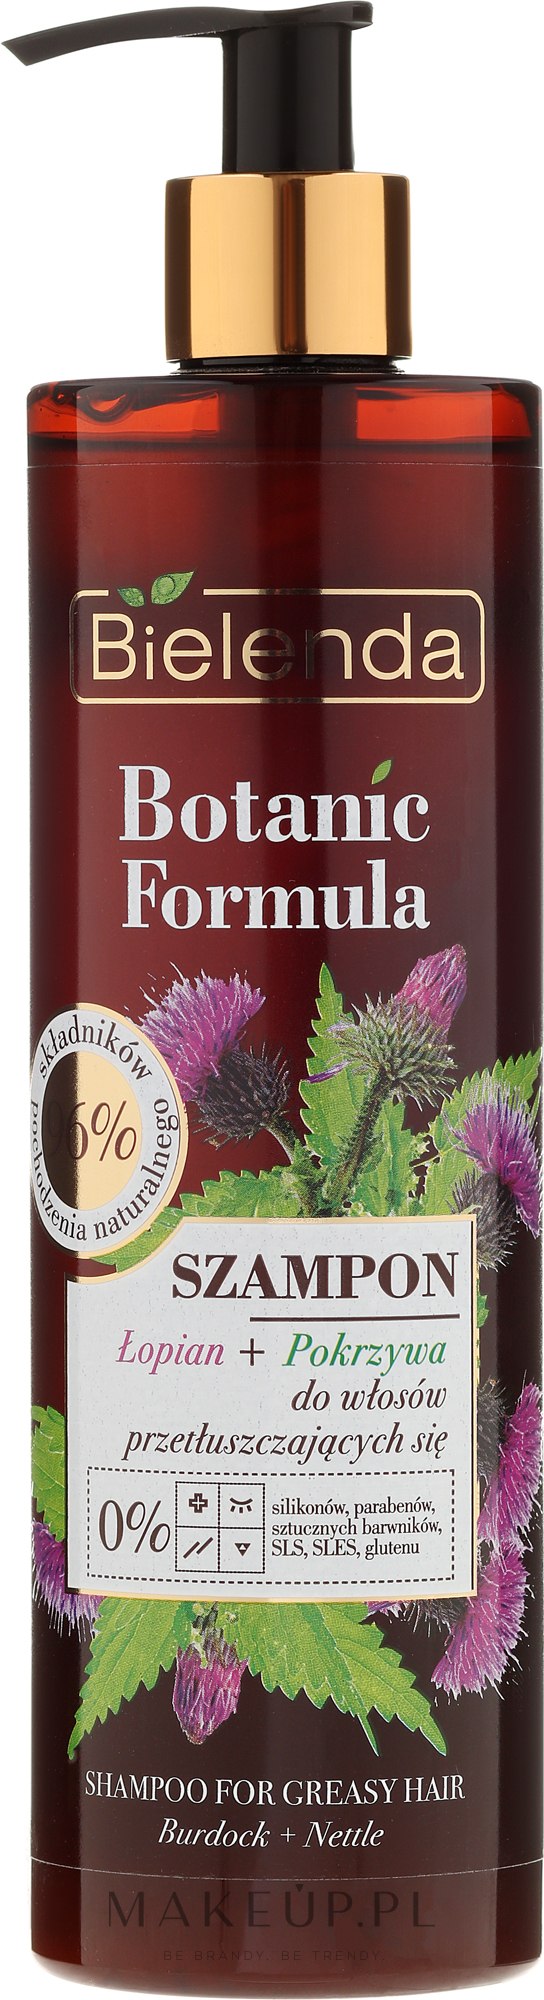 bielenda szampon botanic wizaz